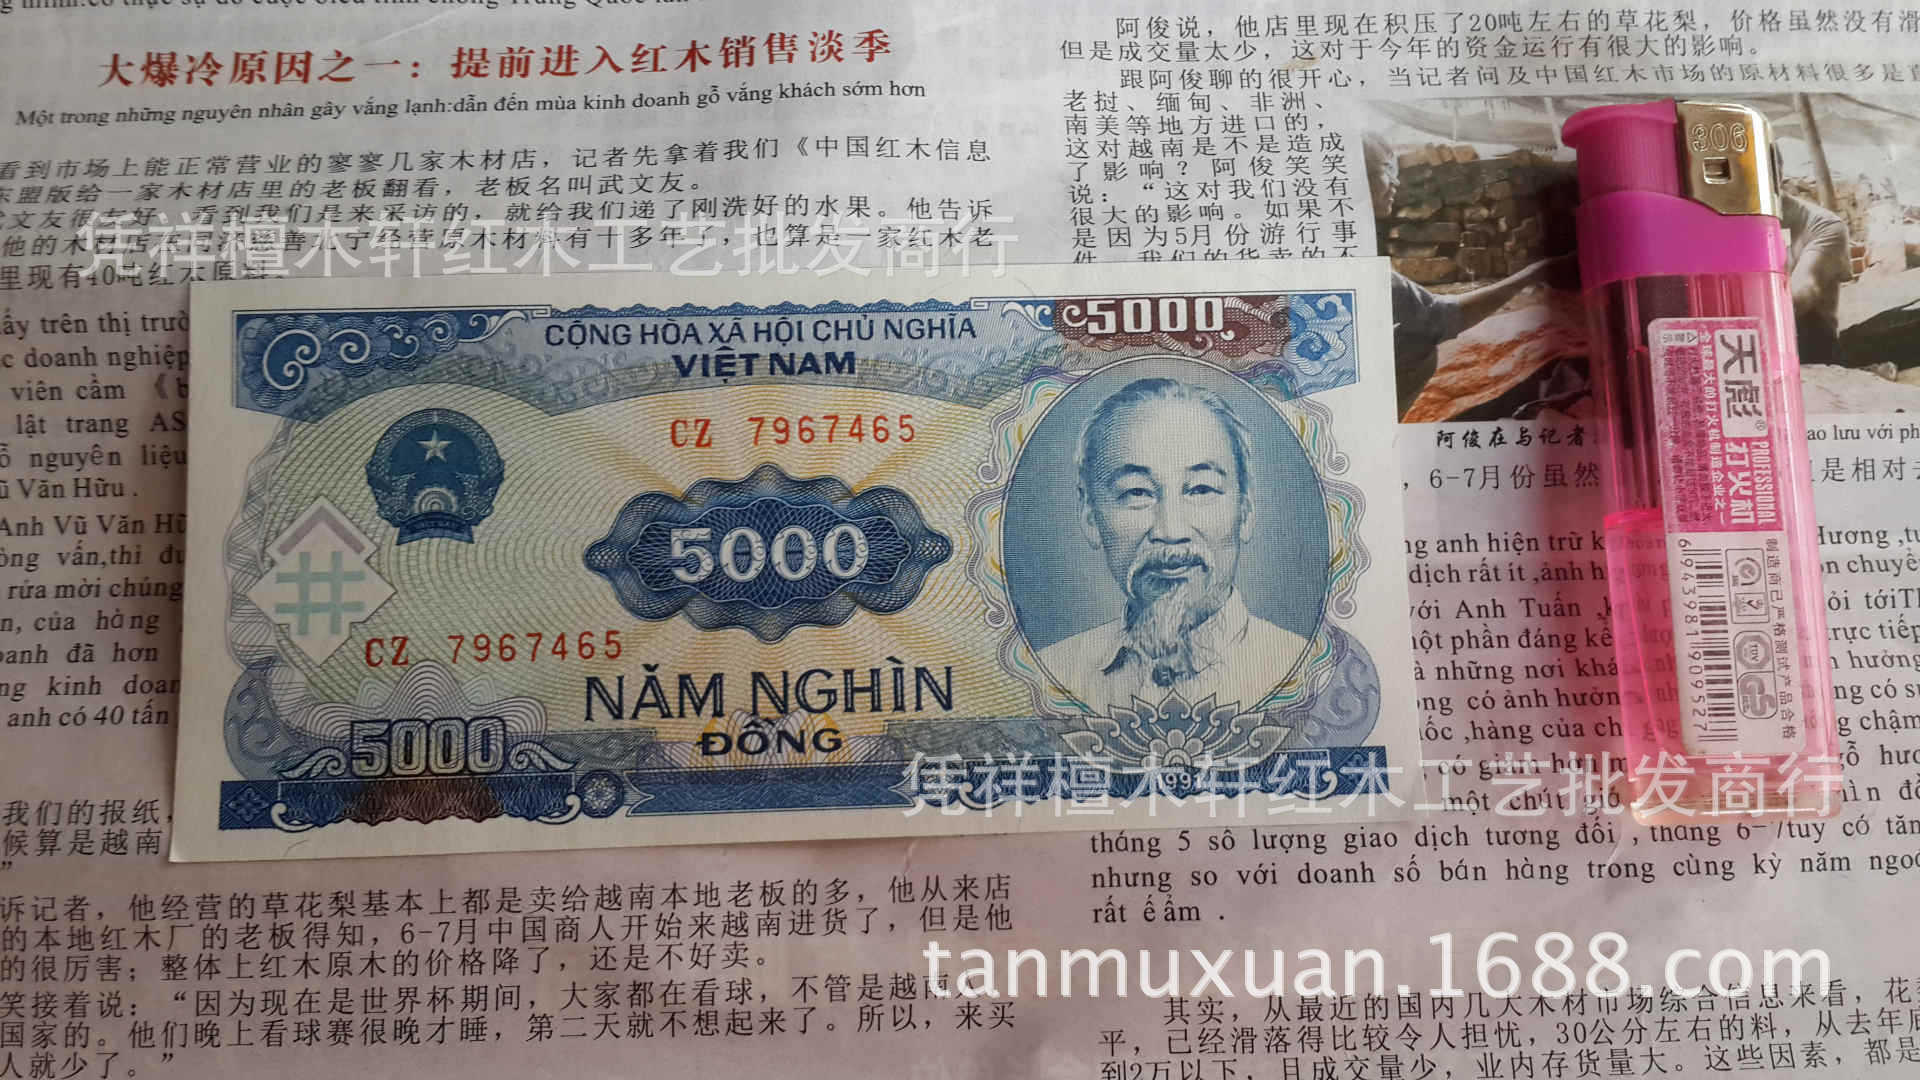 越南红木工艺品批发 5000元面值越南盾 外国纸币 钱币